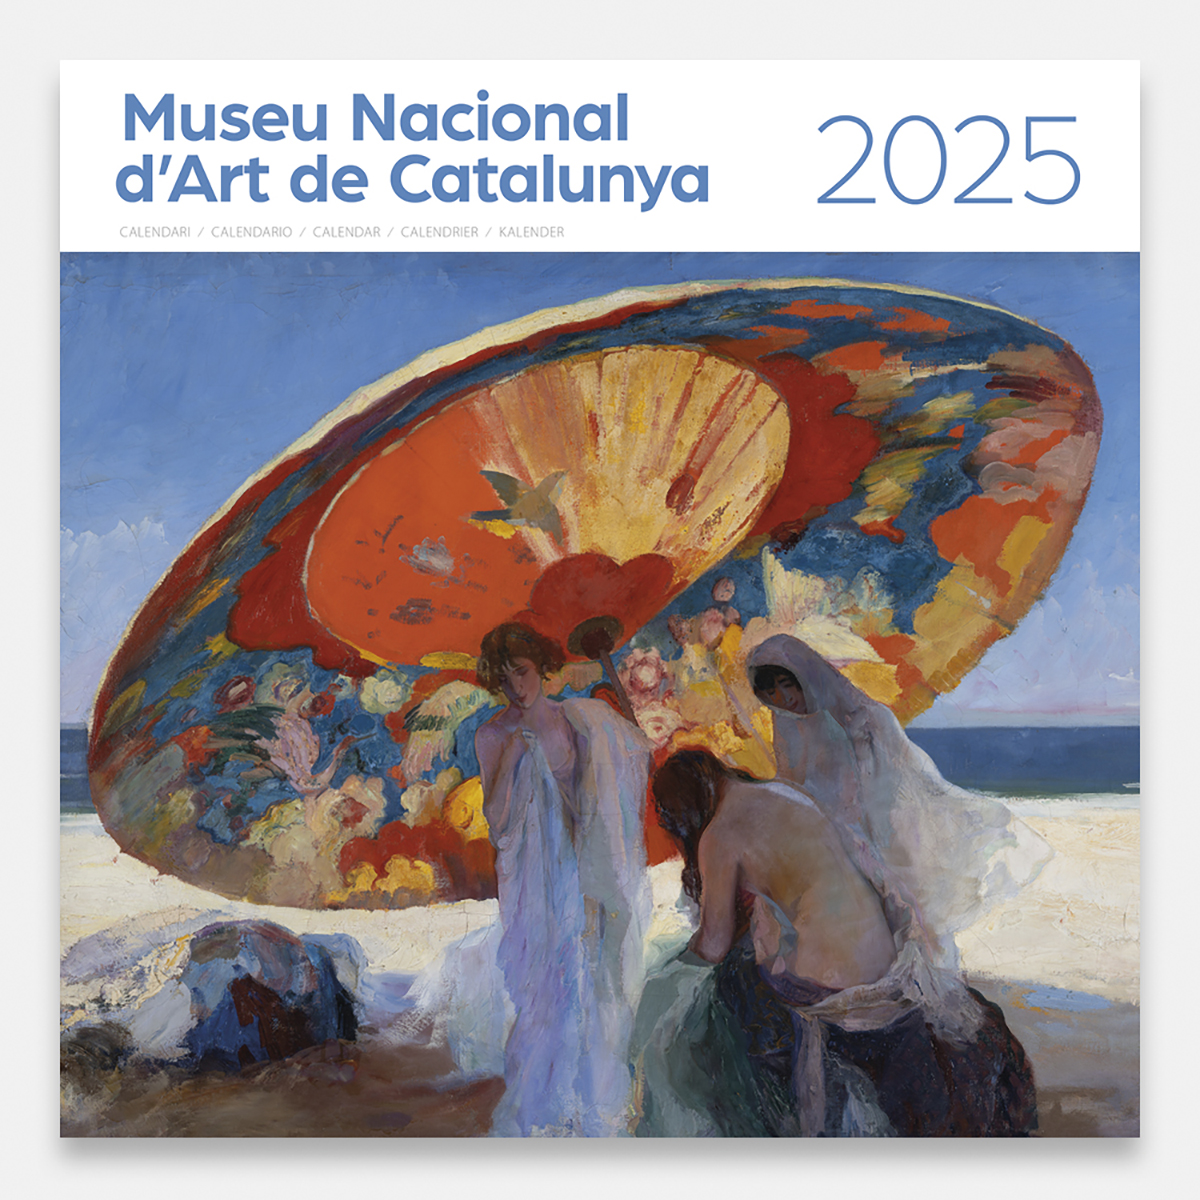 Calendario 2025 Museu Nacional d’Art de Catalunya 25mnacg calendario pared 2025 museu nacional art catalunya